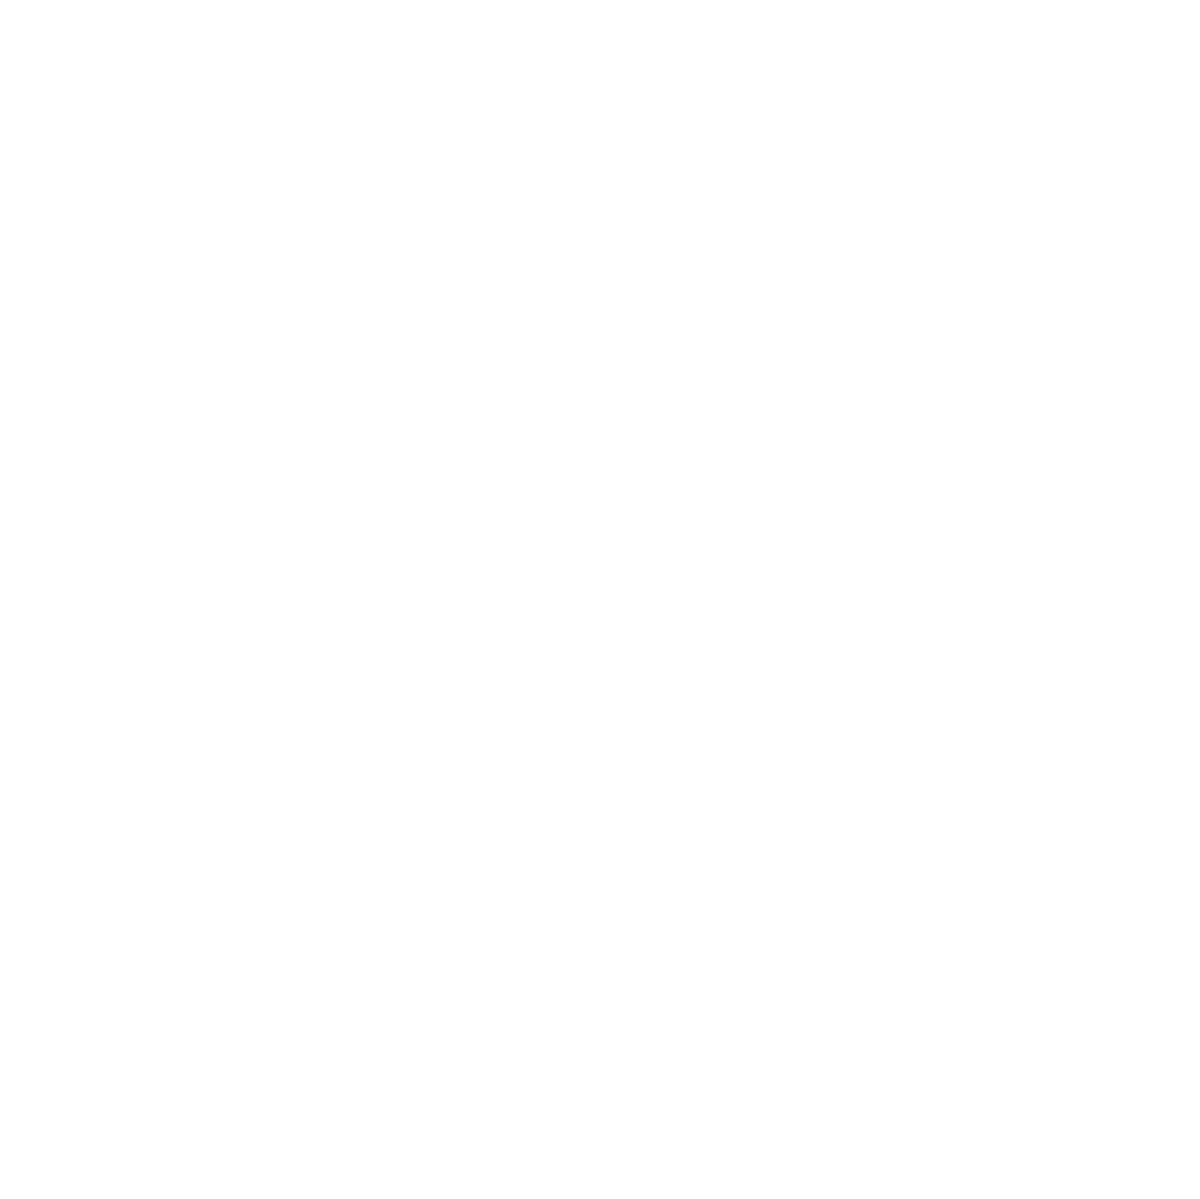 Cambium - Silent Ventures